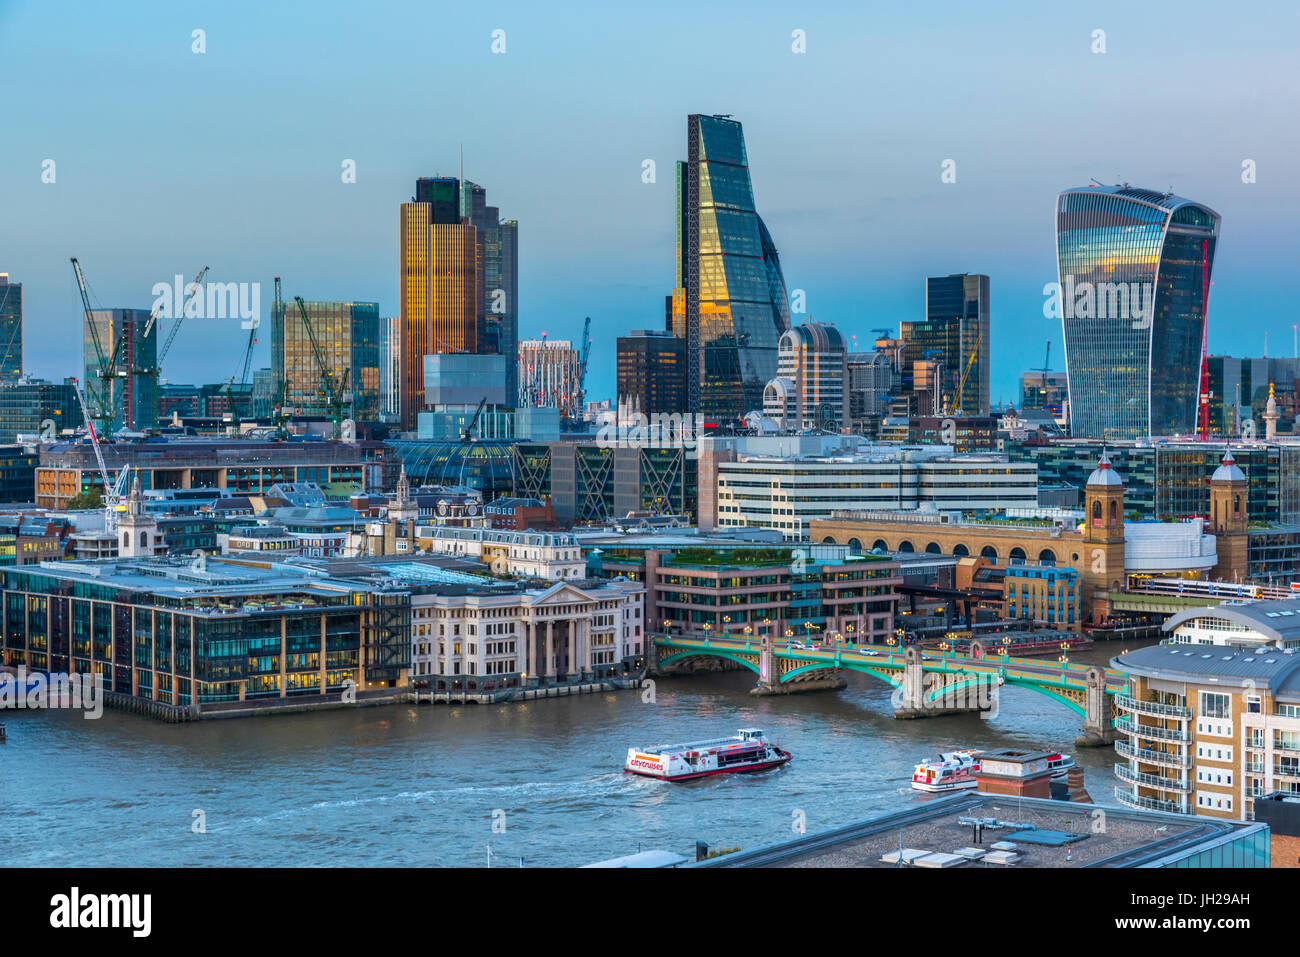 Ville de London Skyline, tour 42, le talkie walkie et Cheesegrater gratte-ciel, Londres, Angleterre, Royaume-Uni, Europe Banque D'Images